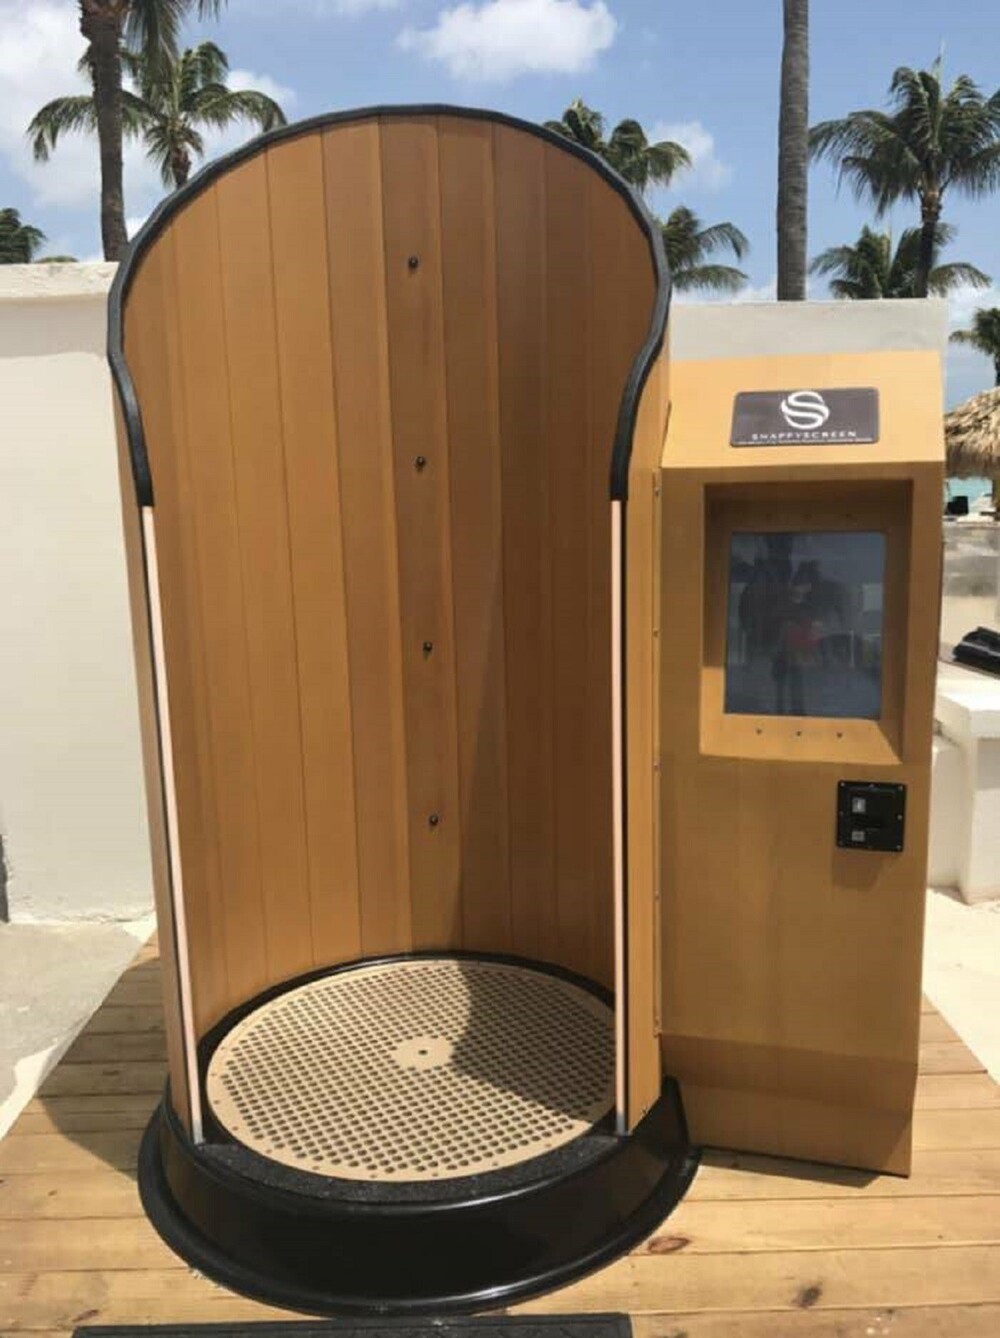 3. На Арубе есть автомат, который наносит солнцезащитный крем. Он вращается вокруг вас и равномерно распыляет средство на тело